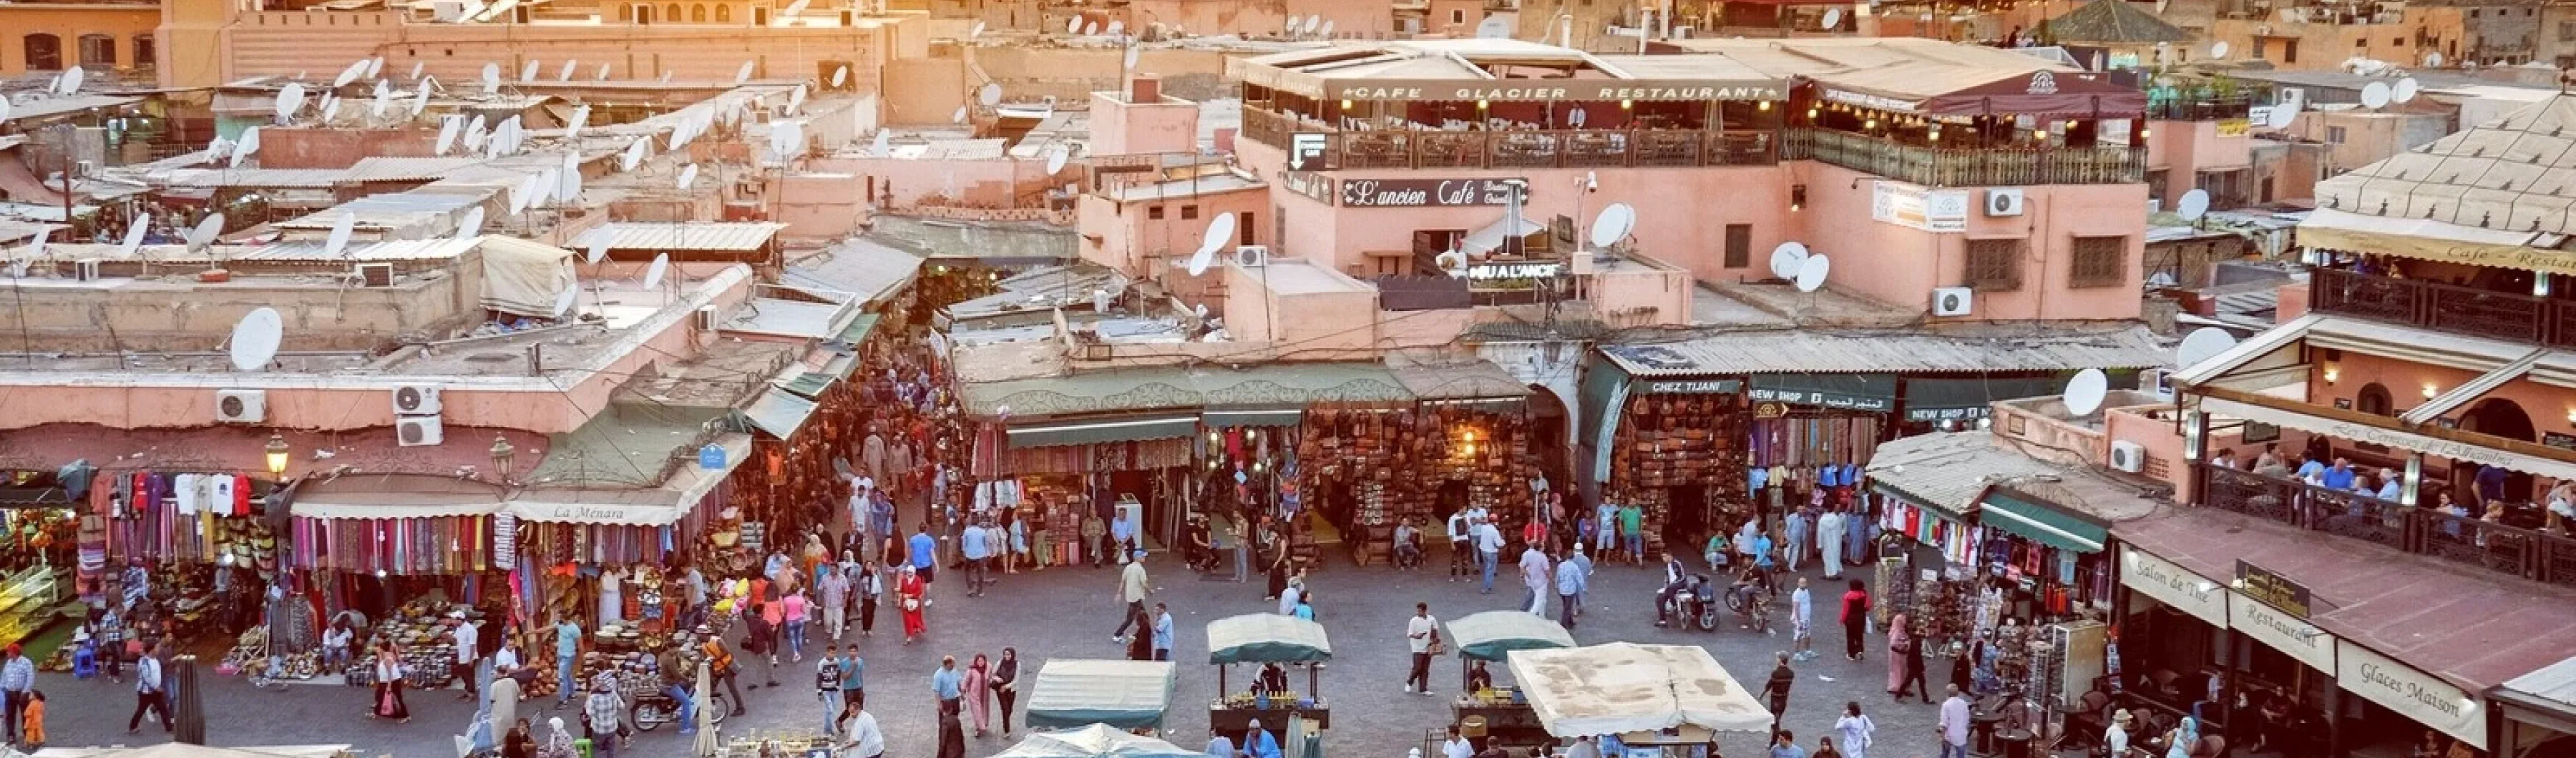 una fotografía de un ajetreado mercado urbano al atardecer